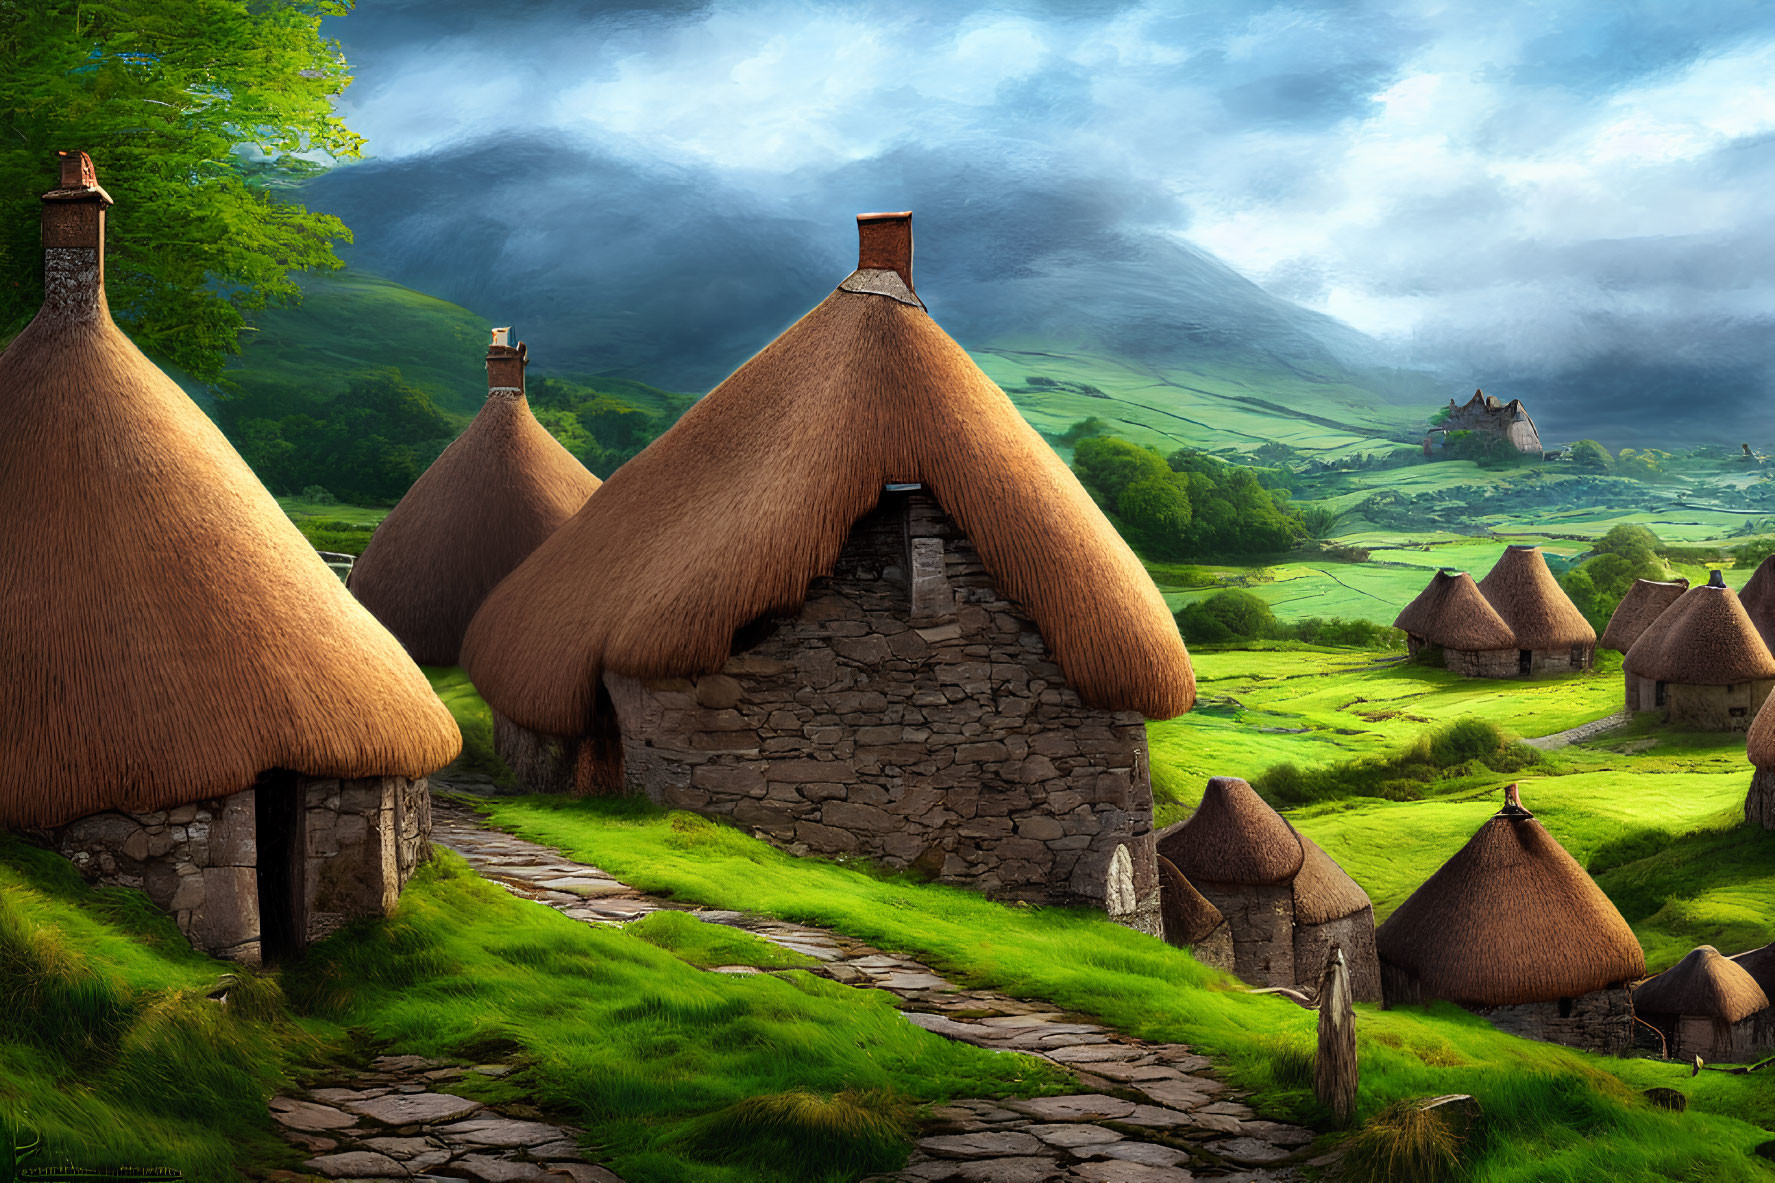 15th century Scotland highlands village